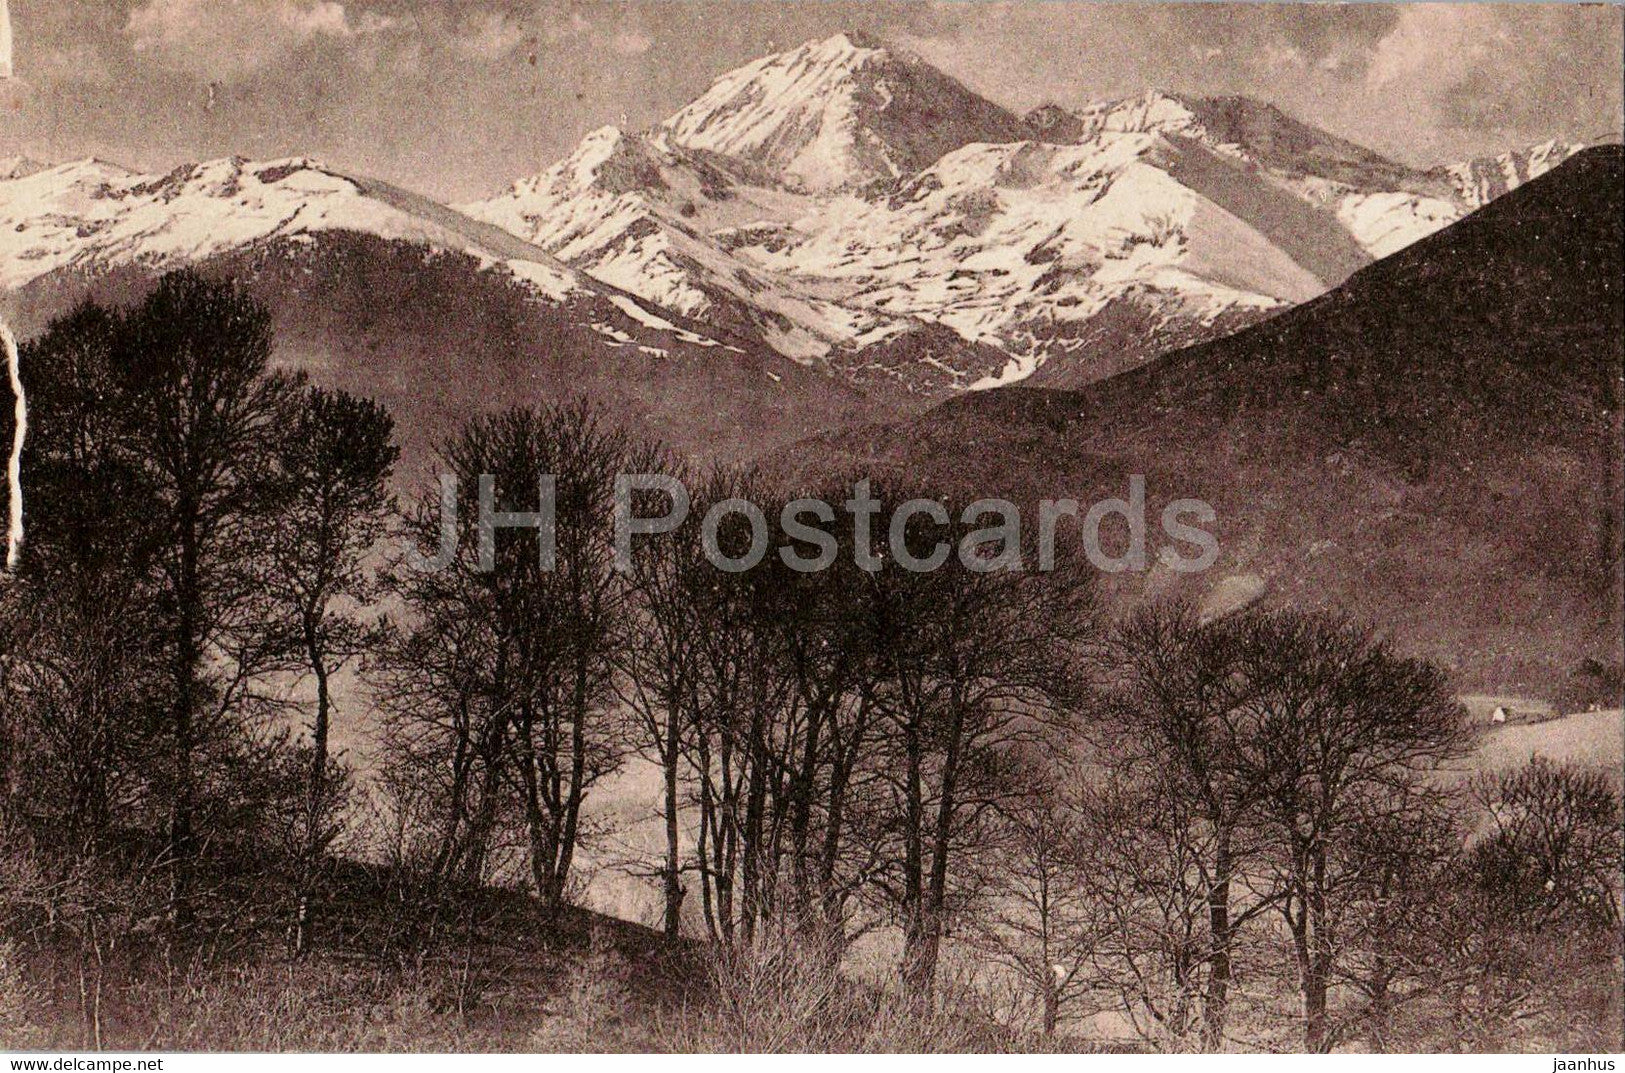 Bagneres de Bigorre - Le Pic du Midi vu des Palomieres - 66 - old postcard - France - unused - JH Postcards